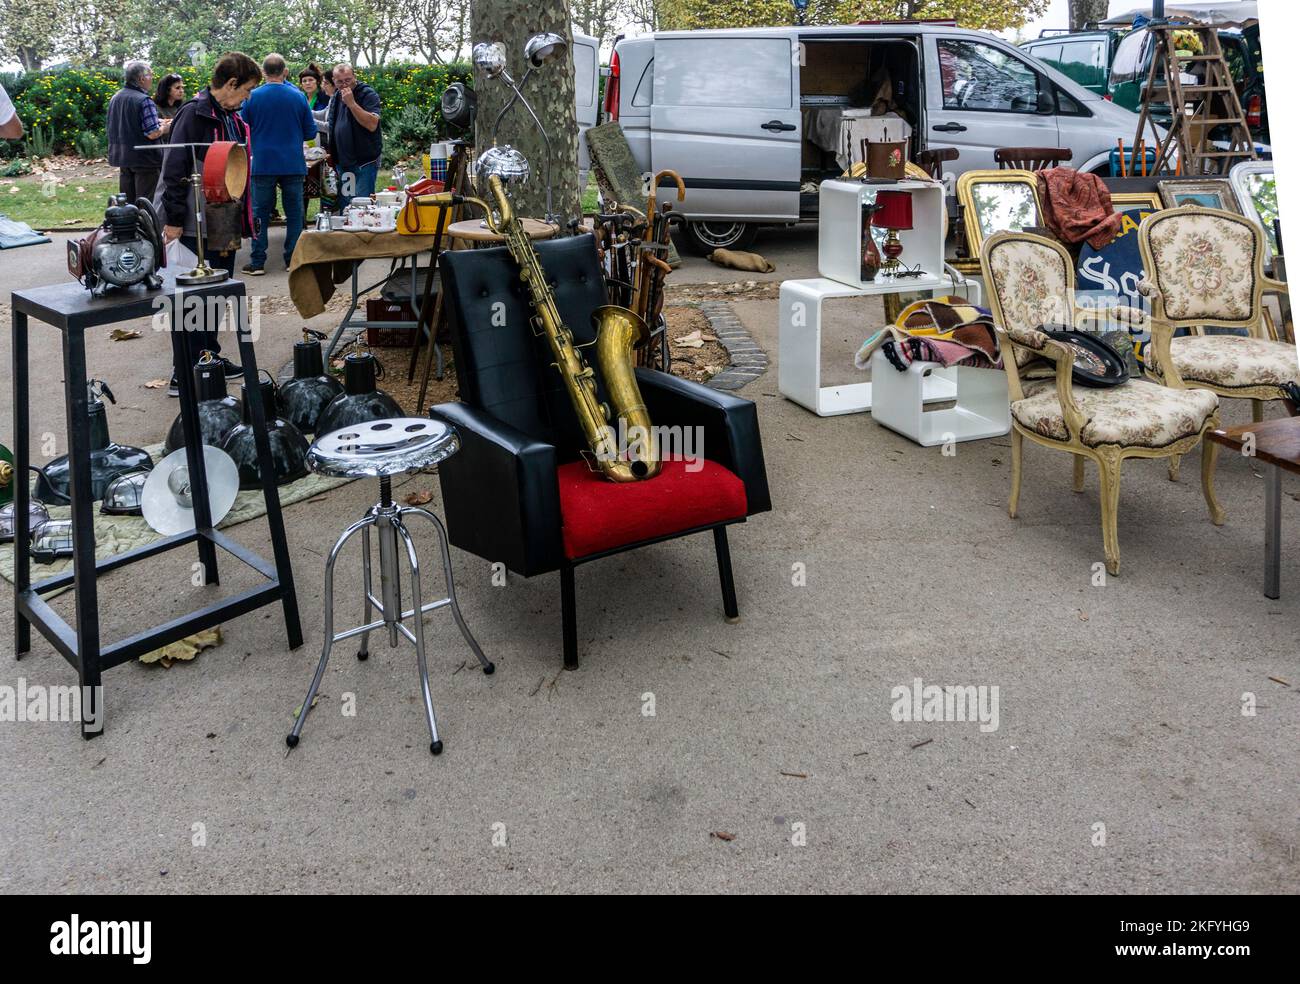 Der Sonntagsflohmarkt im Peyrou in Montpelier, Frankreich. Ein großer Markt, der eine große Auswahl an Artikeln verkauft. Unter den Gegenständen ist hier eine alte Klarinette. Stockfoto